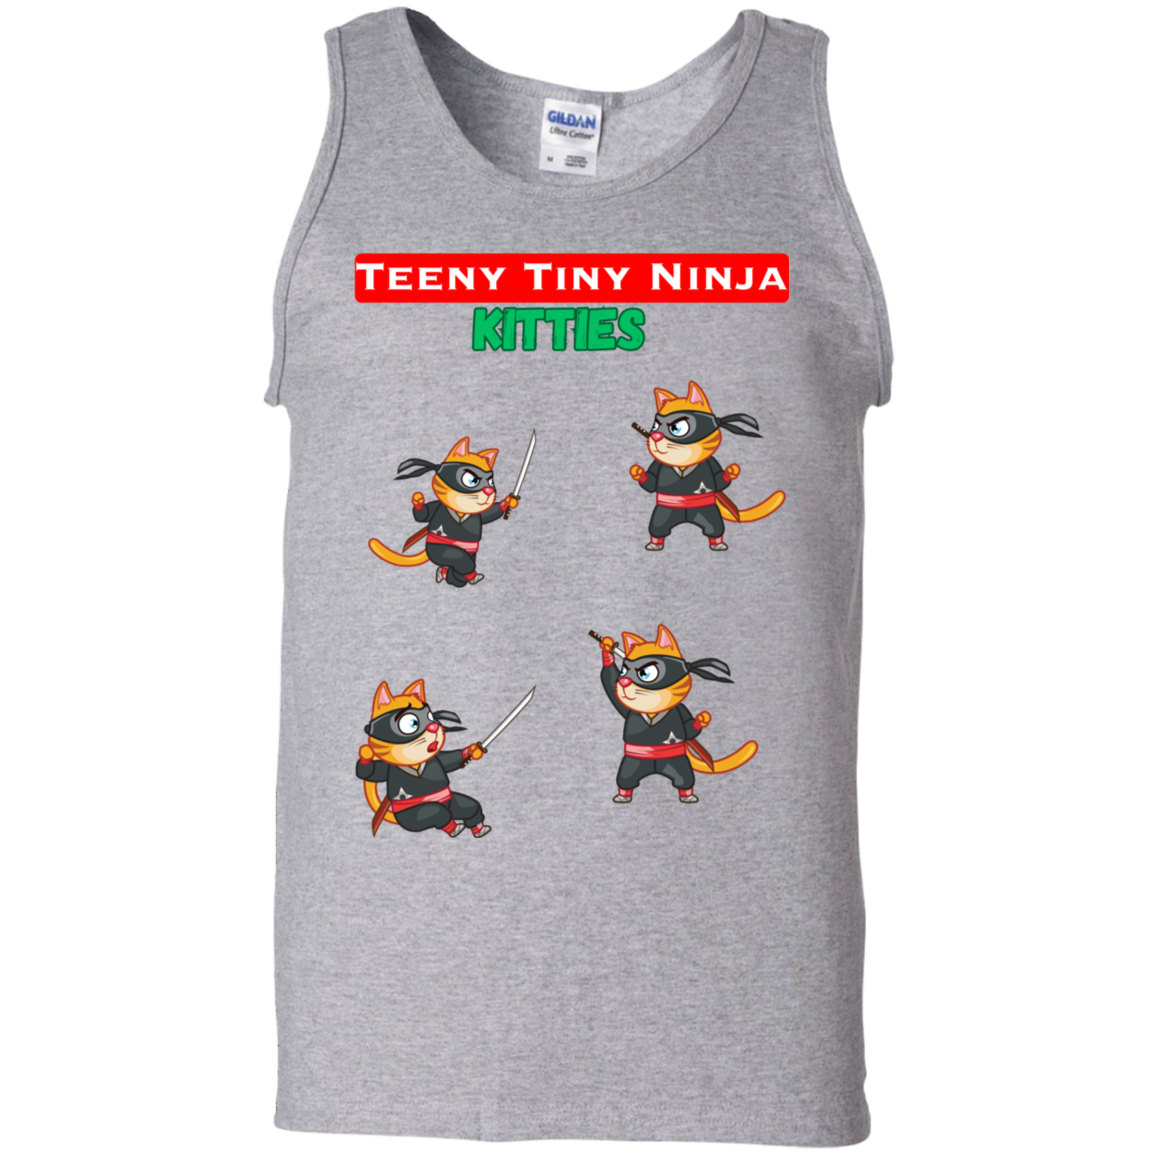 Teeny Tiny Ninja Kitties - Men's Tank Top